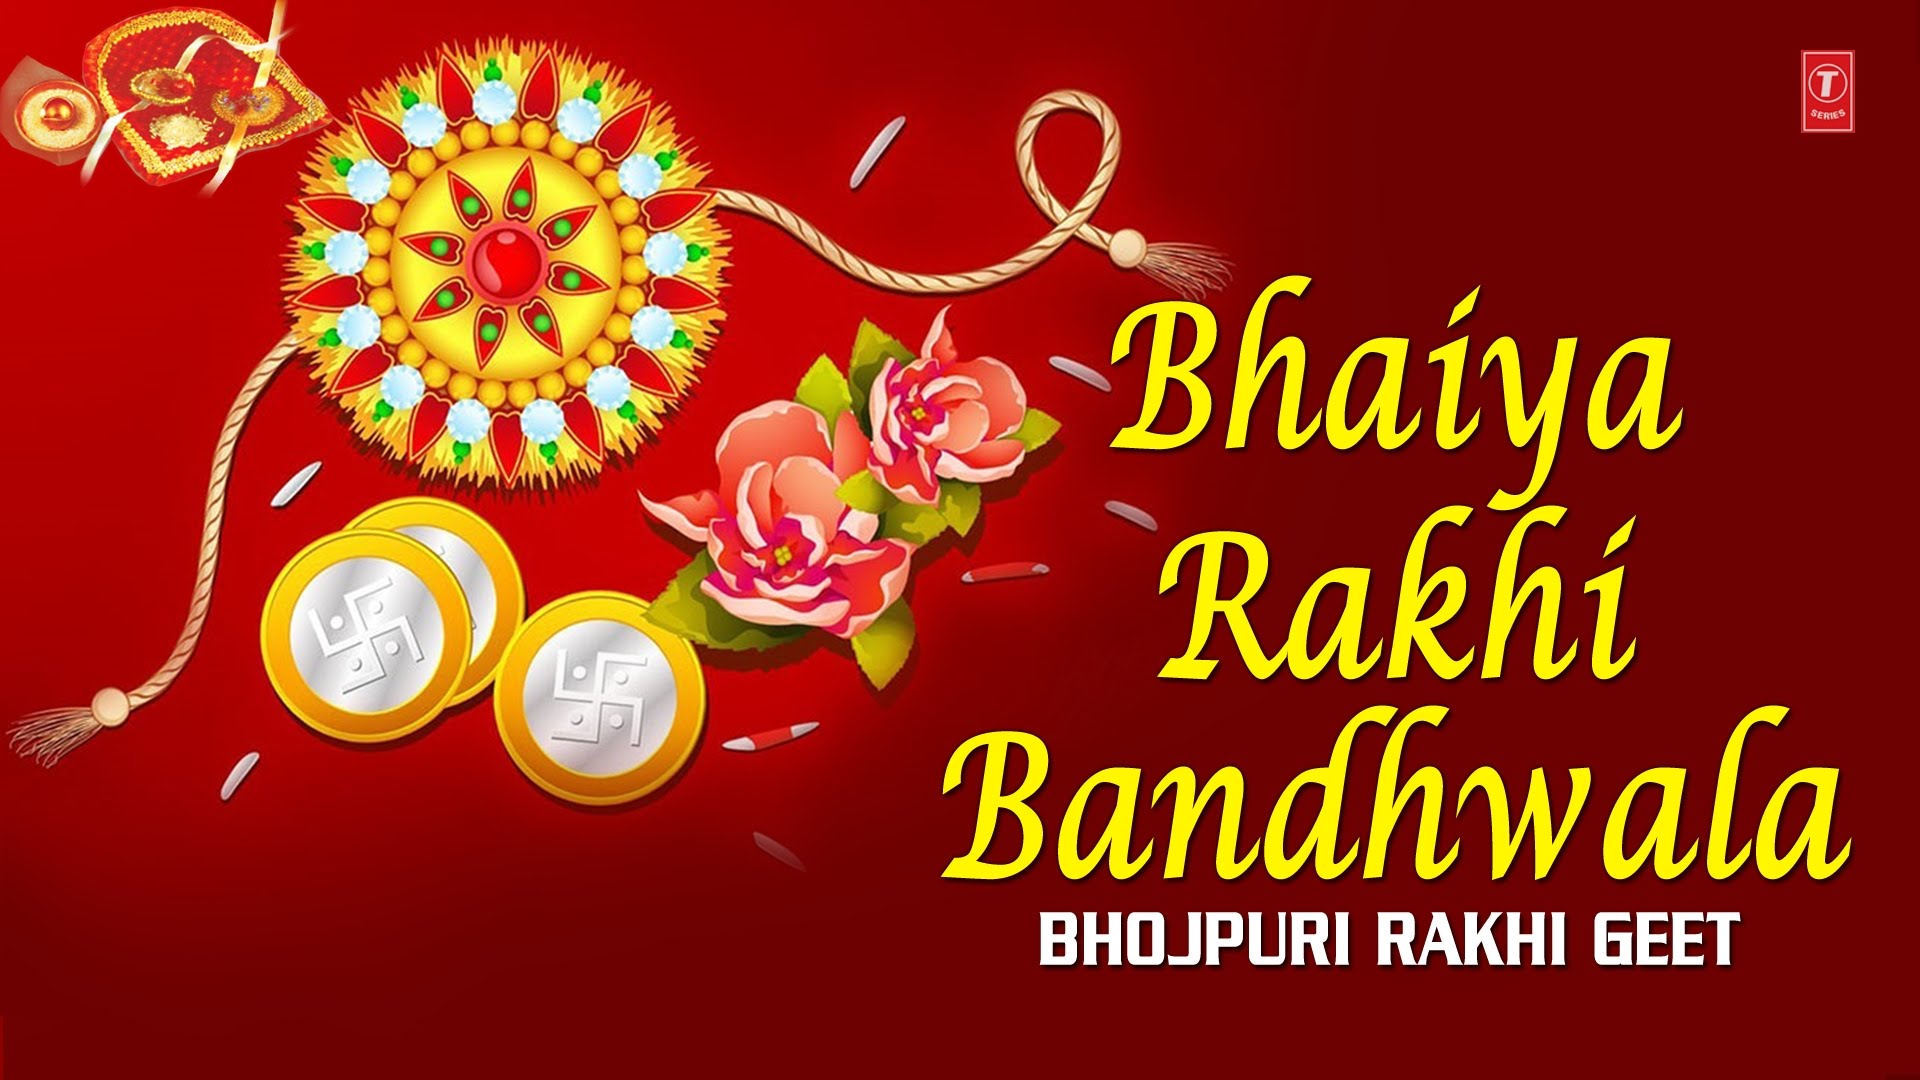 Happy Raksha Bandhan HD Images, Wallpapers for Whatsapp DP 